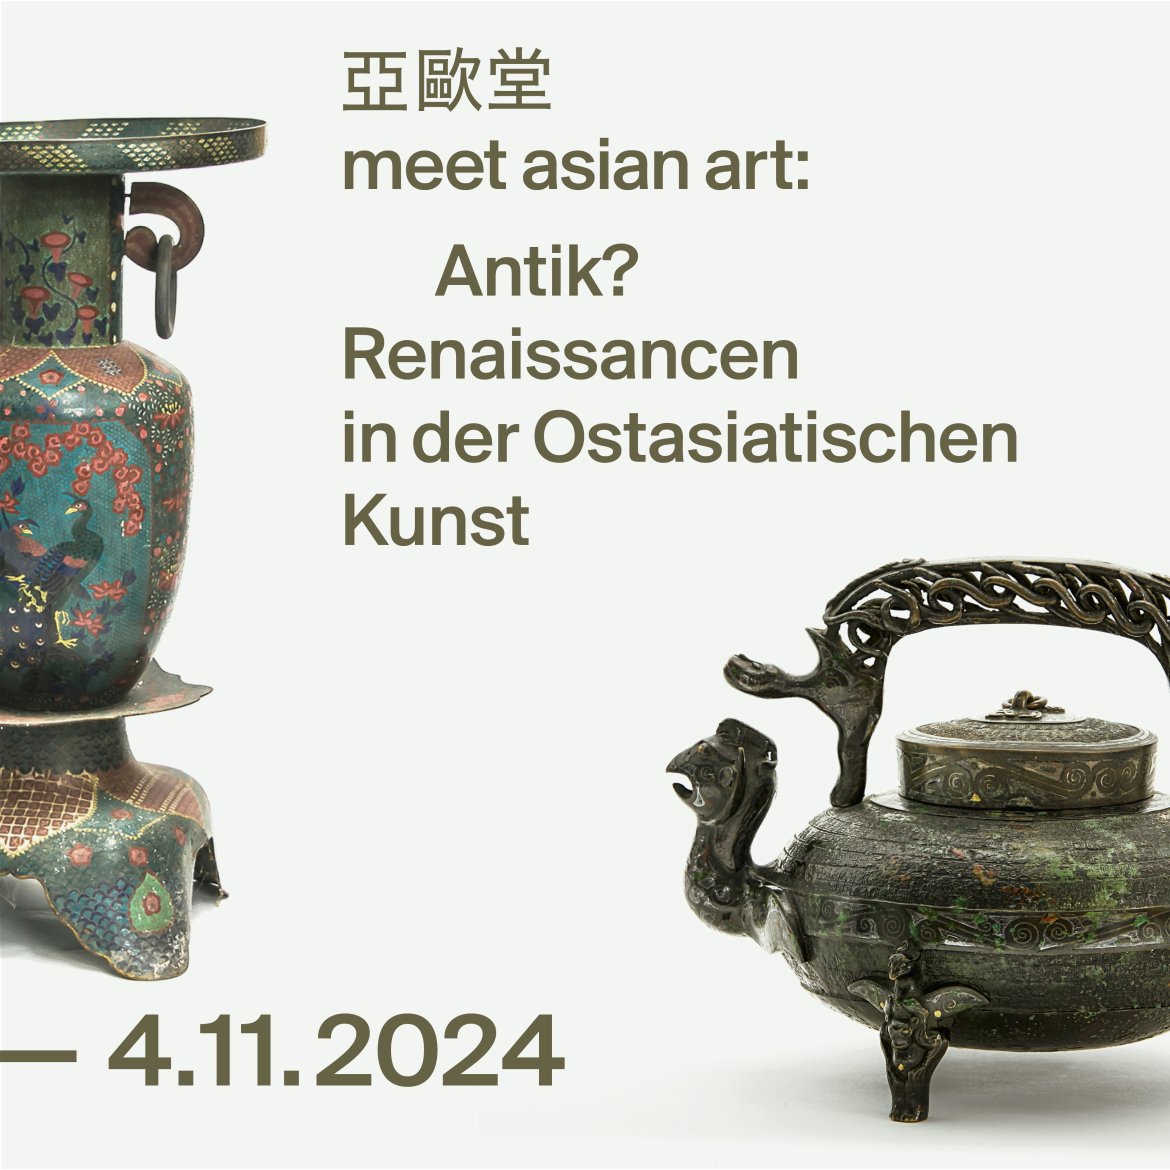 Enlarge image: Schriftzug zur Ausstellung, links im Anschnitt eine asiatische Vase, rechts eine Kanne